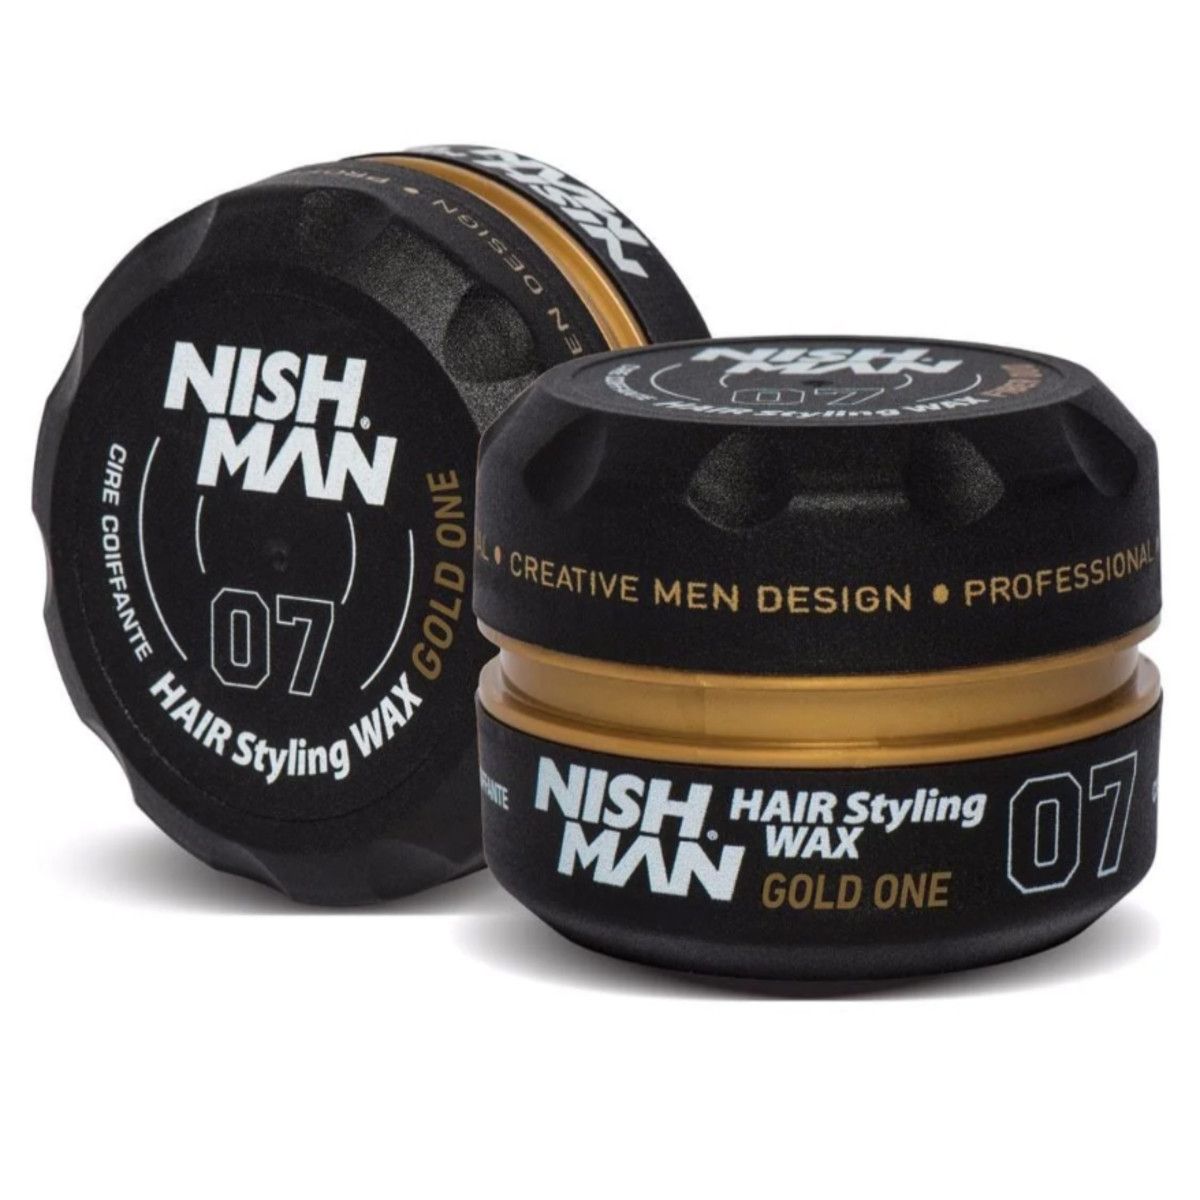 Nishman Hair Styling Wax Gold One - pomada stylizująca do włosów, 150ml